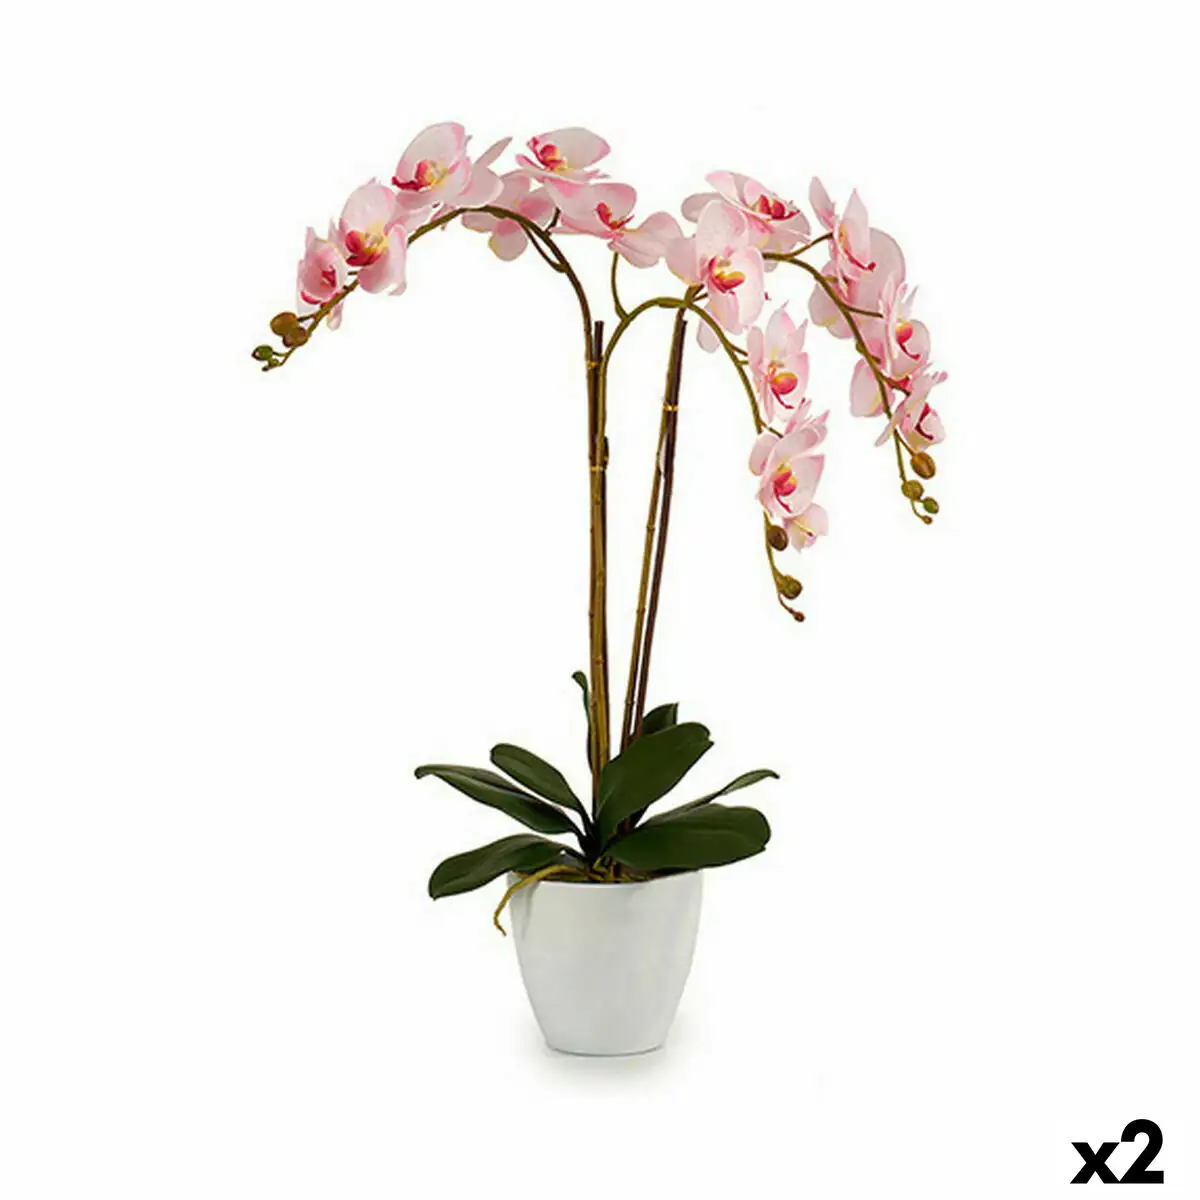 Plante decorative orchidee plastique 40 x 77 x 35 cm 2 unites _7719. DIAYTAR SENEGAL - Où la Qualité est Notre Engagement. Explorez notre boutique en ligne pour découvrir des produits conçus pour vous apporter satisfaction et plaisir.